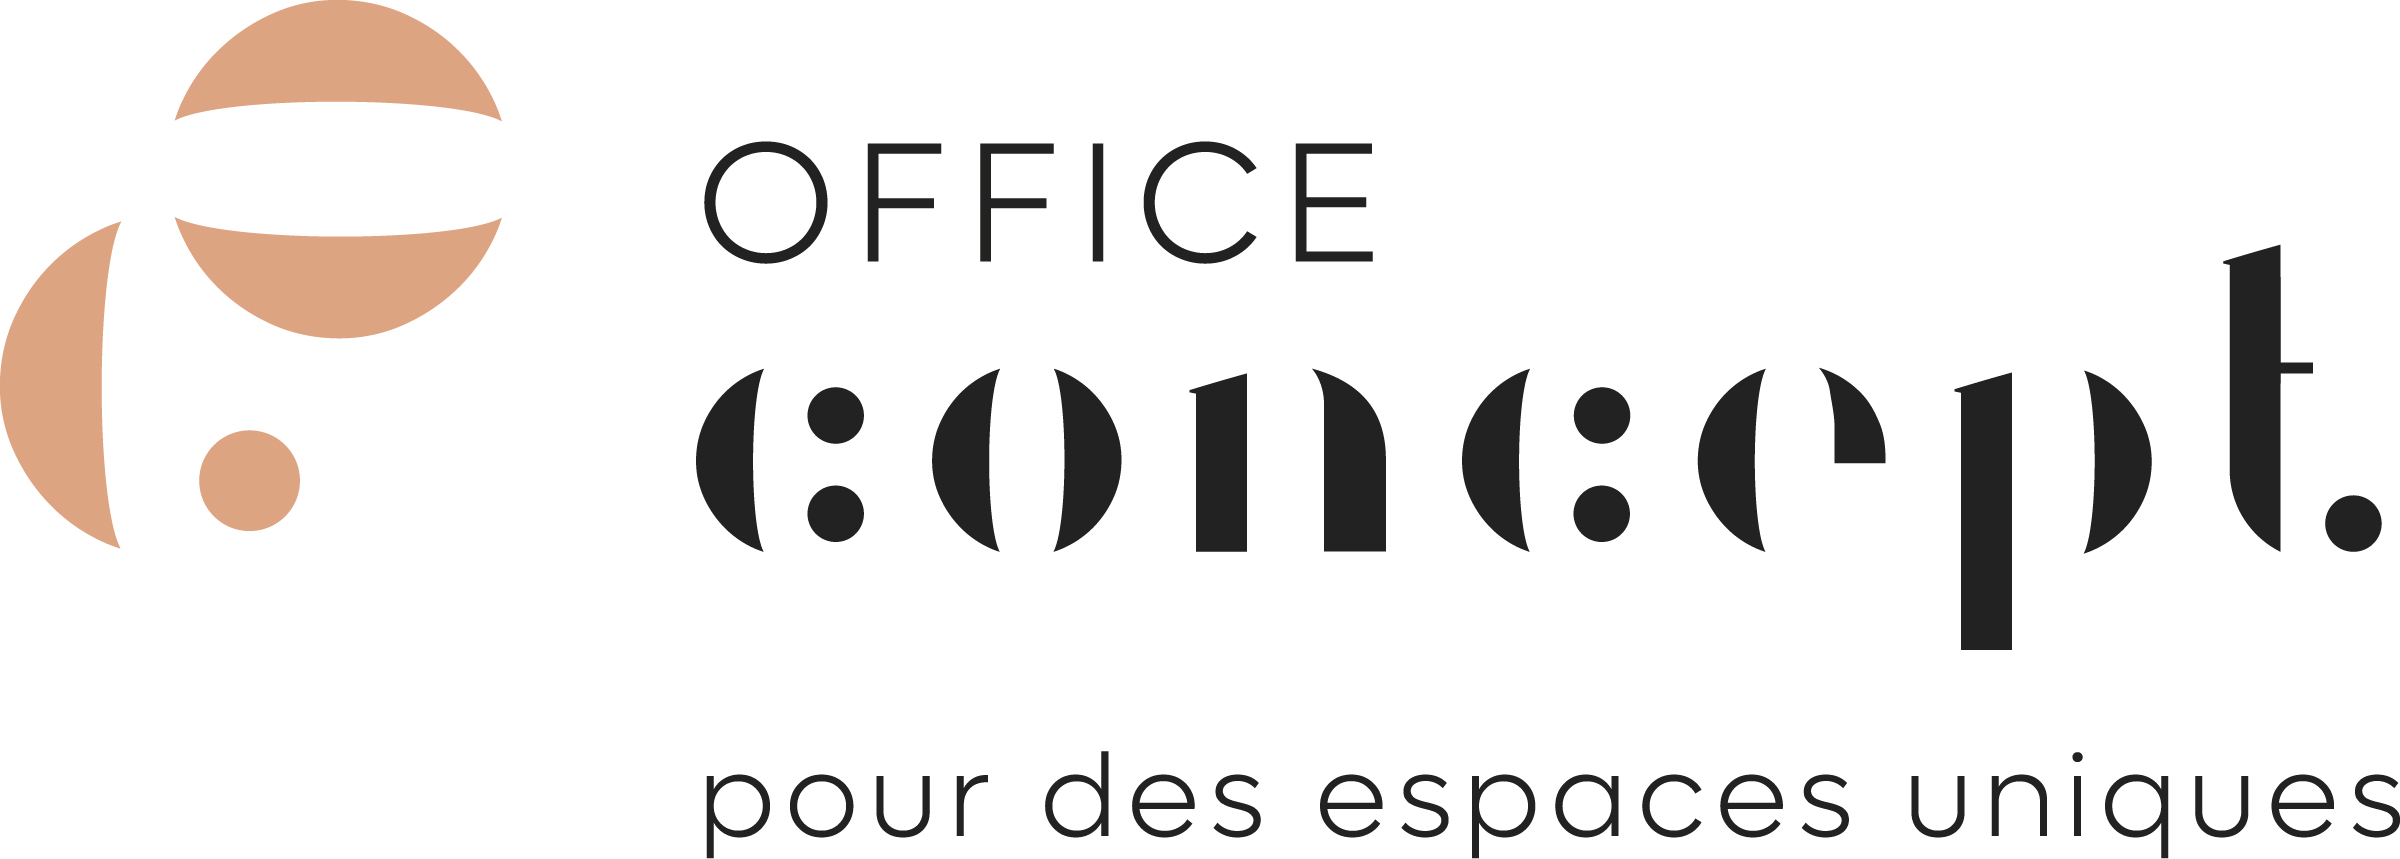 OFFICE CONCEPT logo